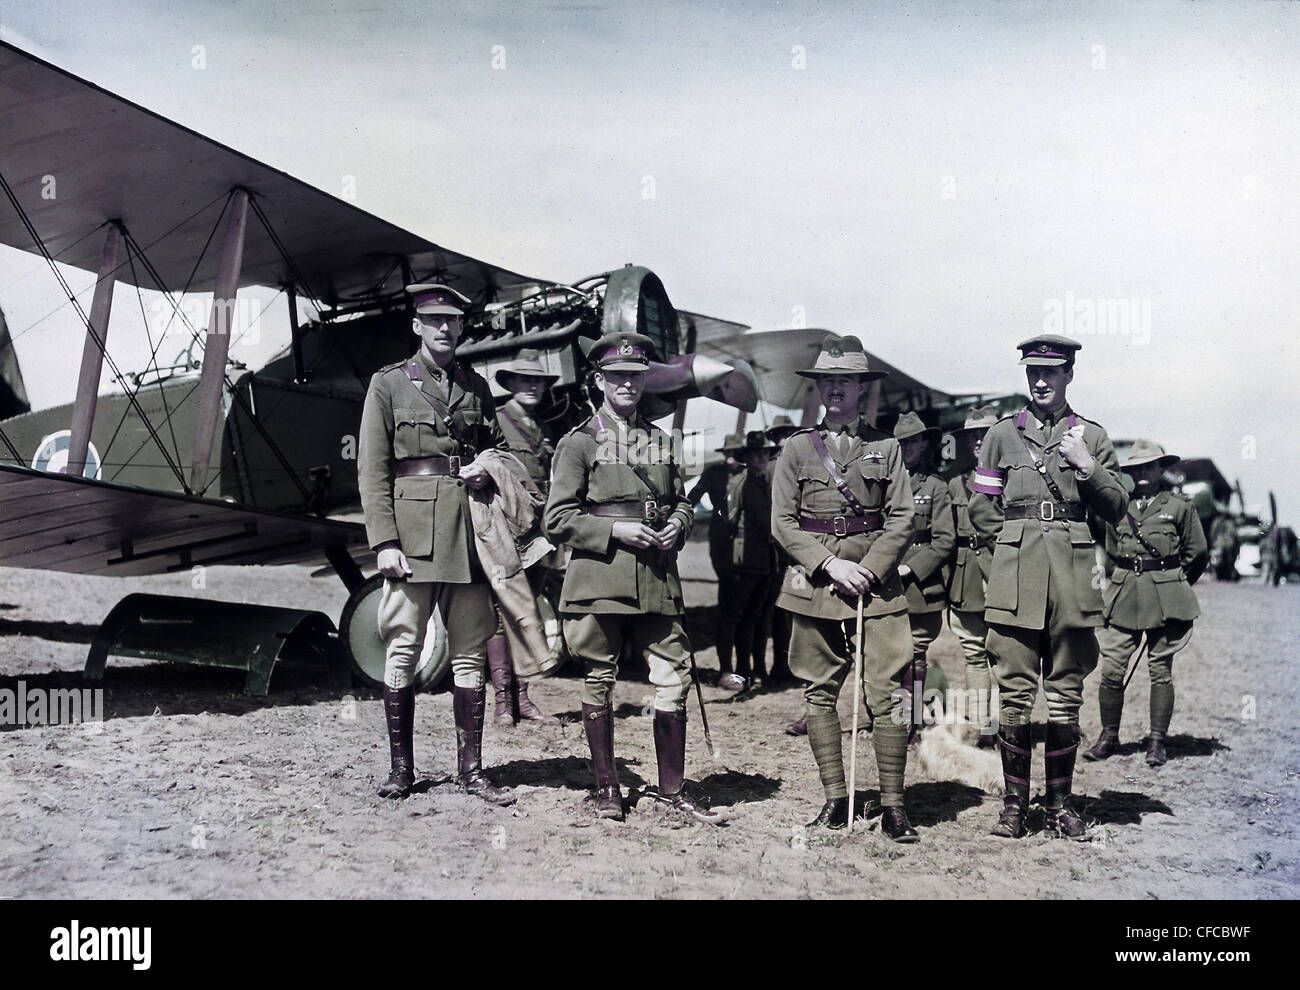 Australiano, el Teniente General Harry Chauvel, oficiales, inspeccionar, escuadrón, Flying Corps, soldados, ejército, fuerzas armadas, plan de combate Foto de stock